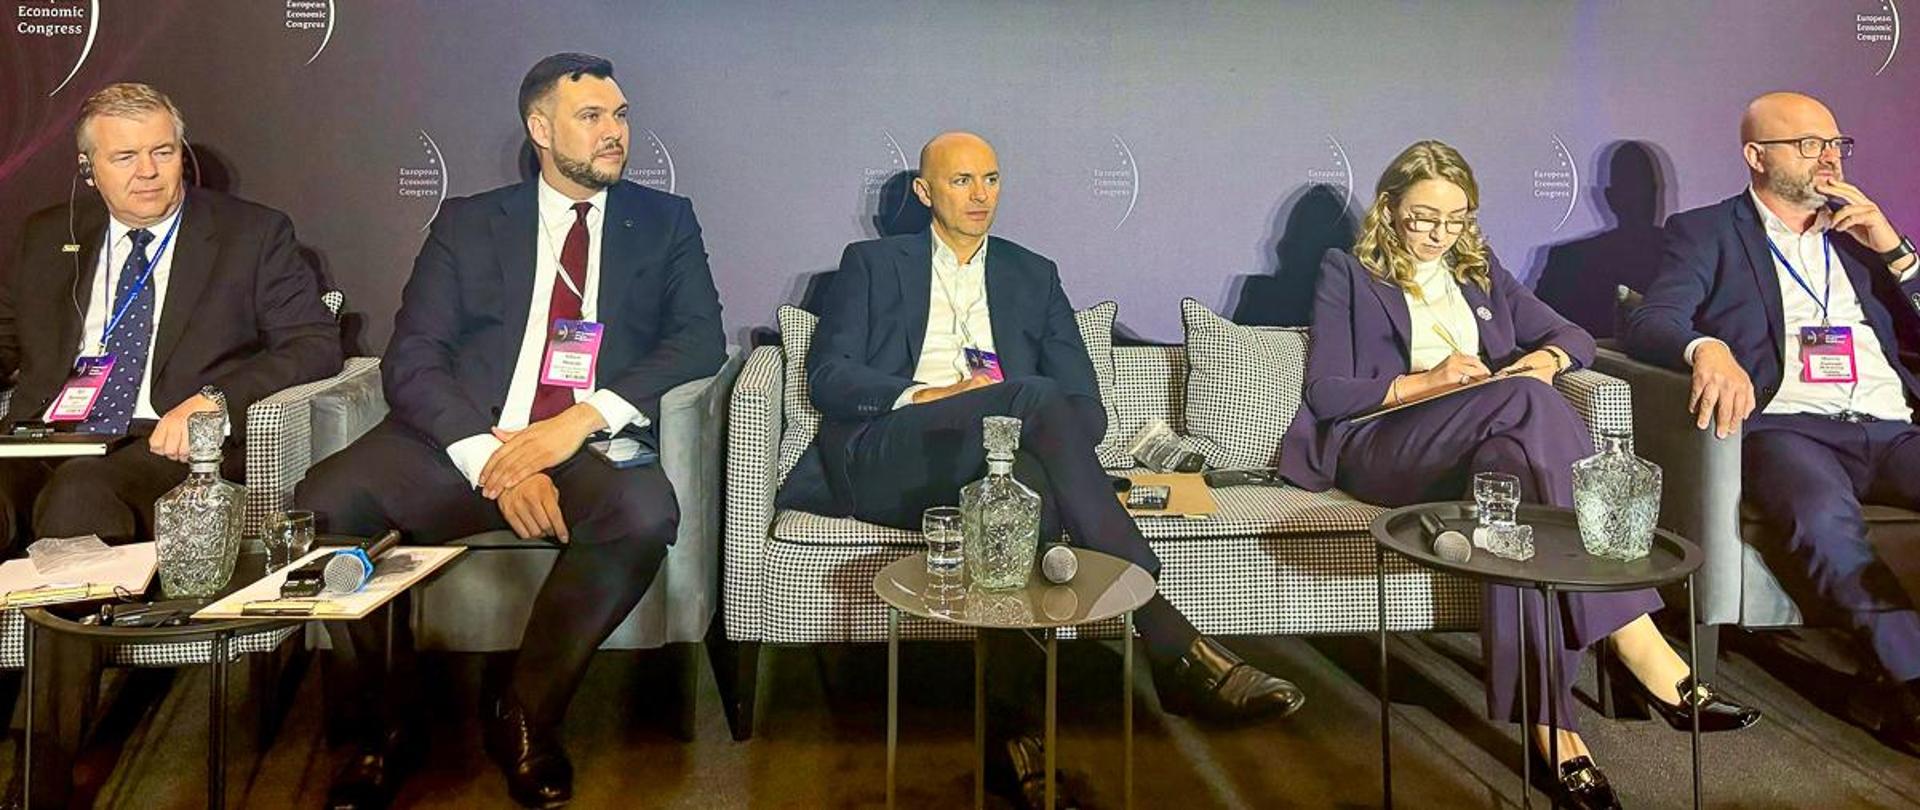 Wiceminister Adam Nowak (drugi z lewej) bierze udział w panelu dyskusyjnym